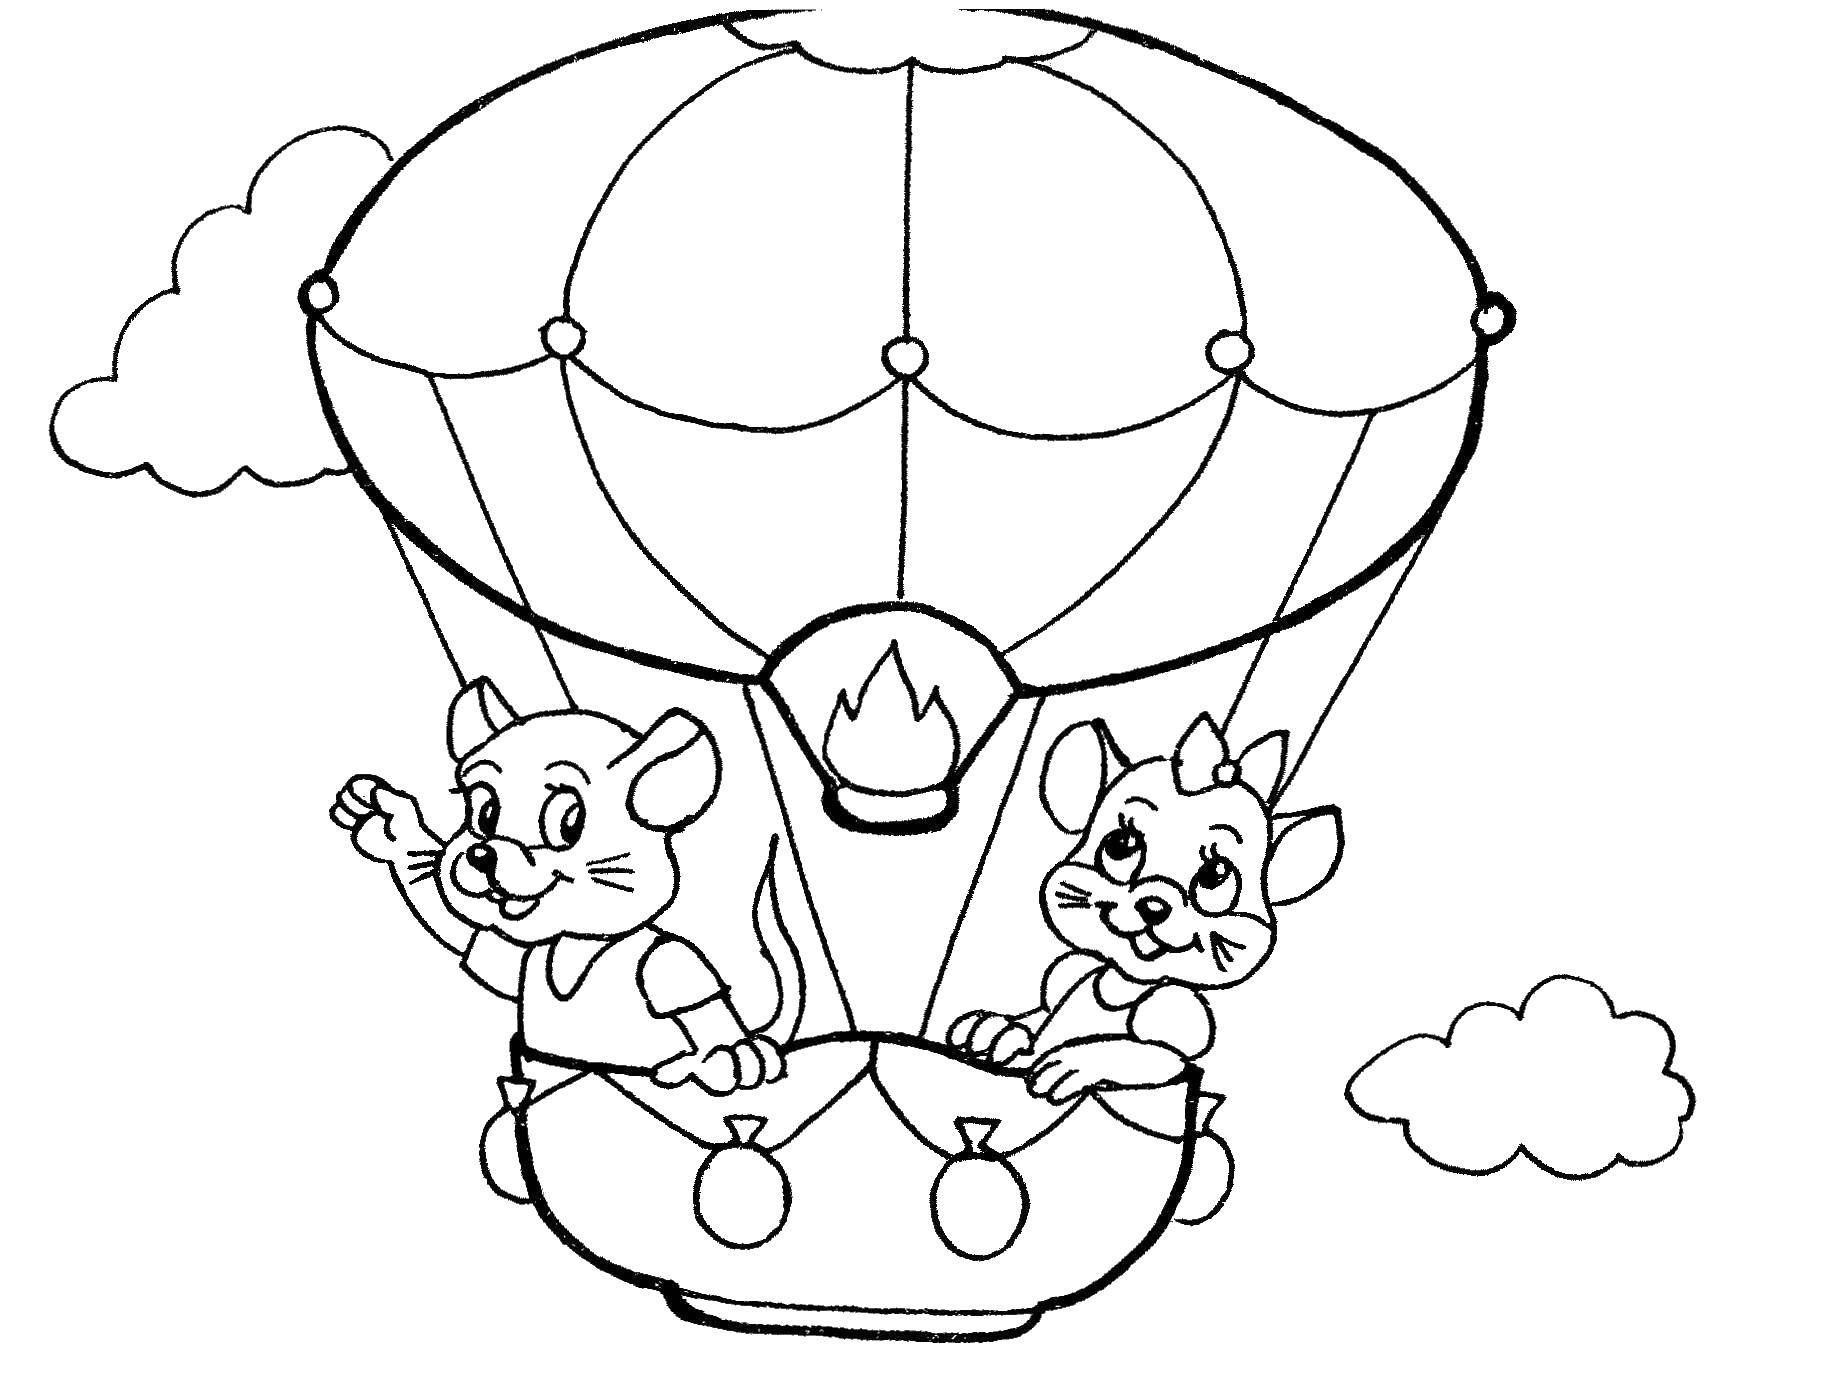 Название: Раскраска Мыши катаются на воздушном шаре. Категория: летательные аппараты. Теги: воздушный шар, мышь.